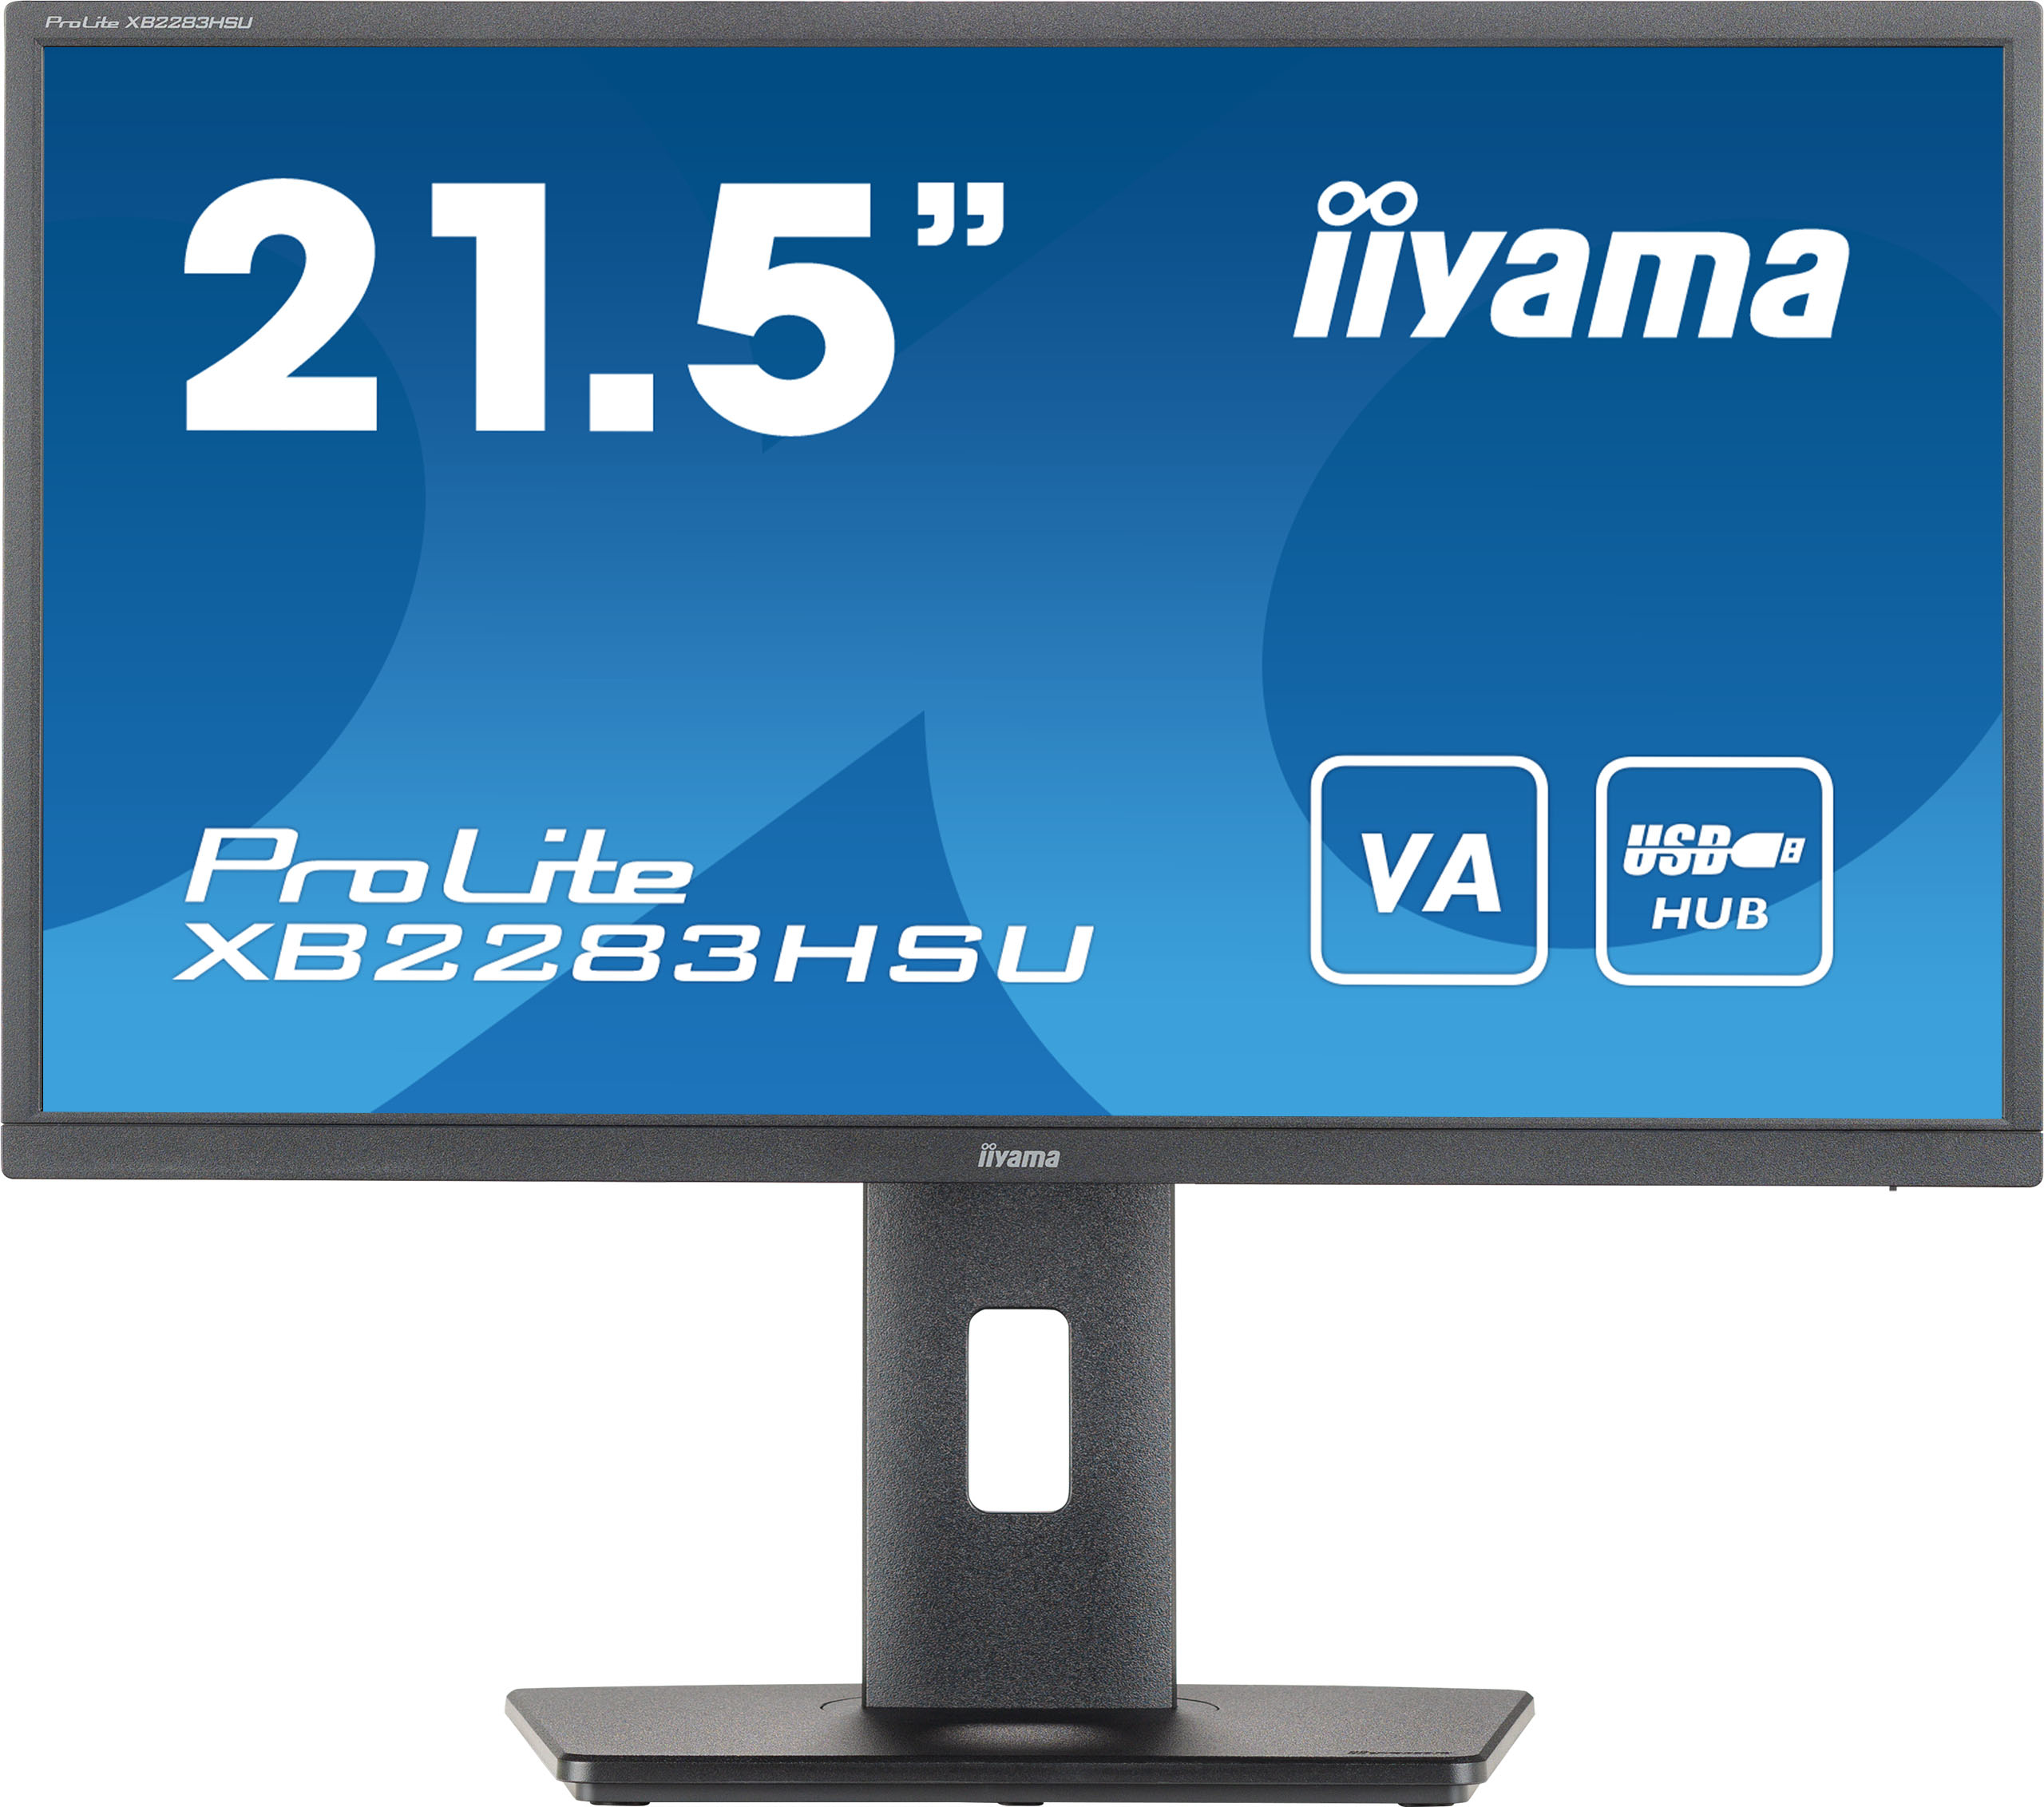 iiyama ProLite XB2283HSU-B1 computer monitor